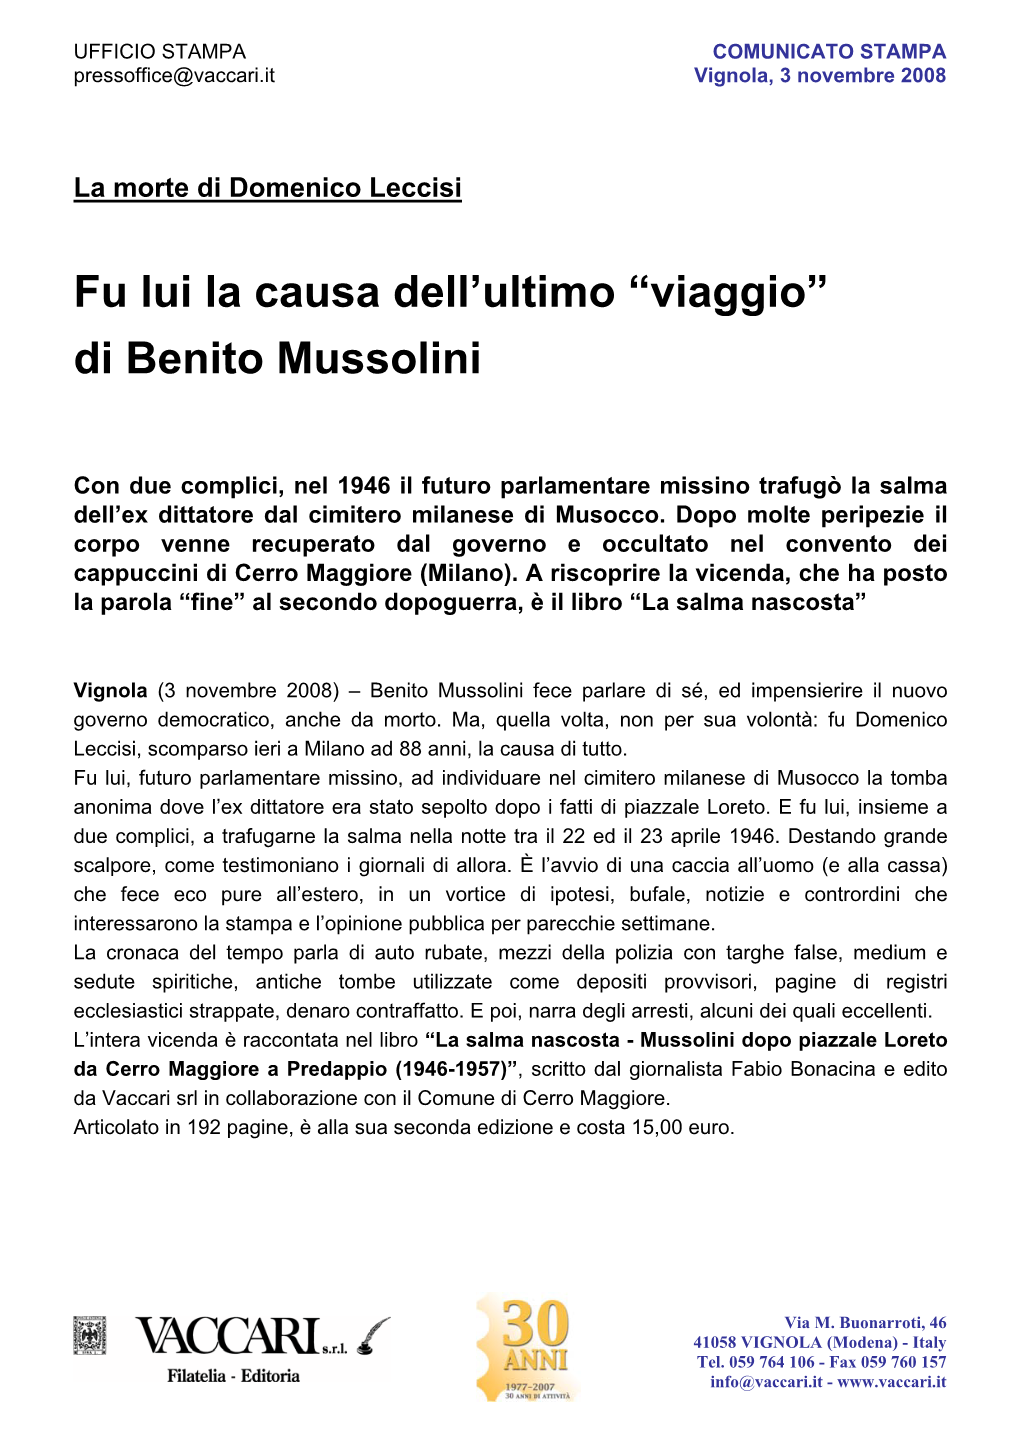 Di Benito Mussolini